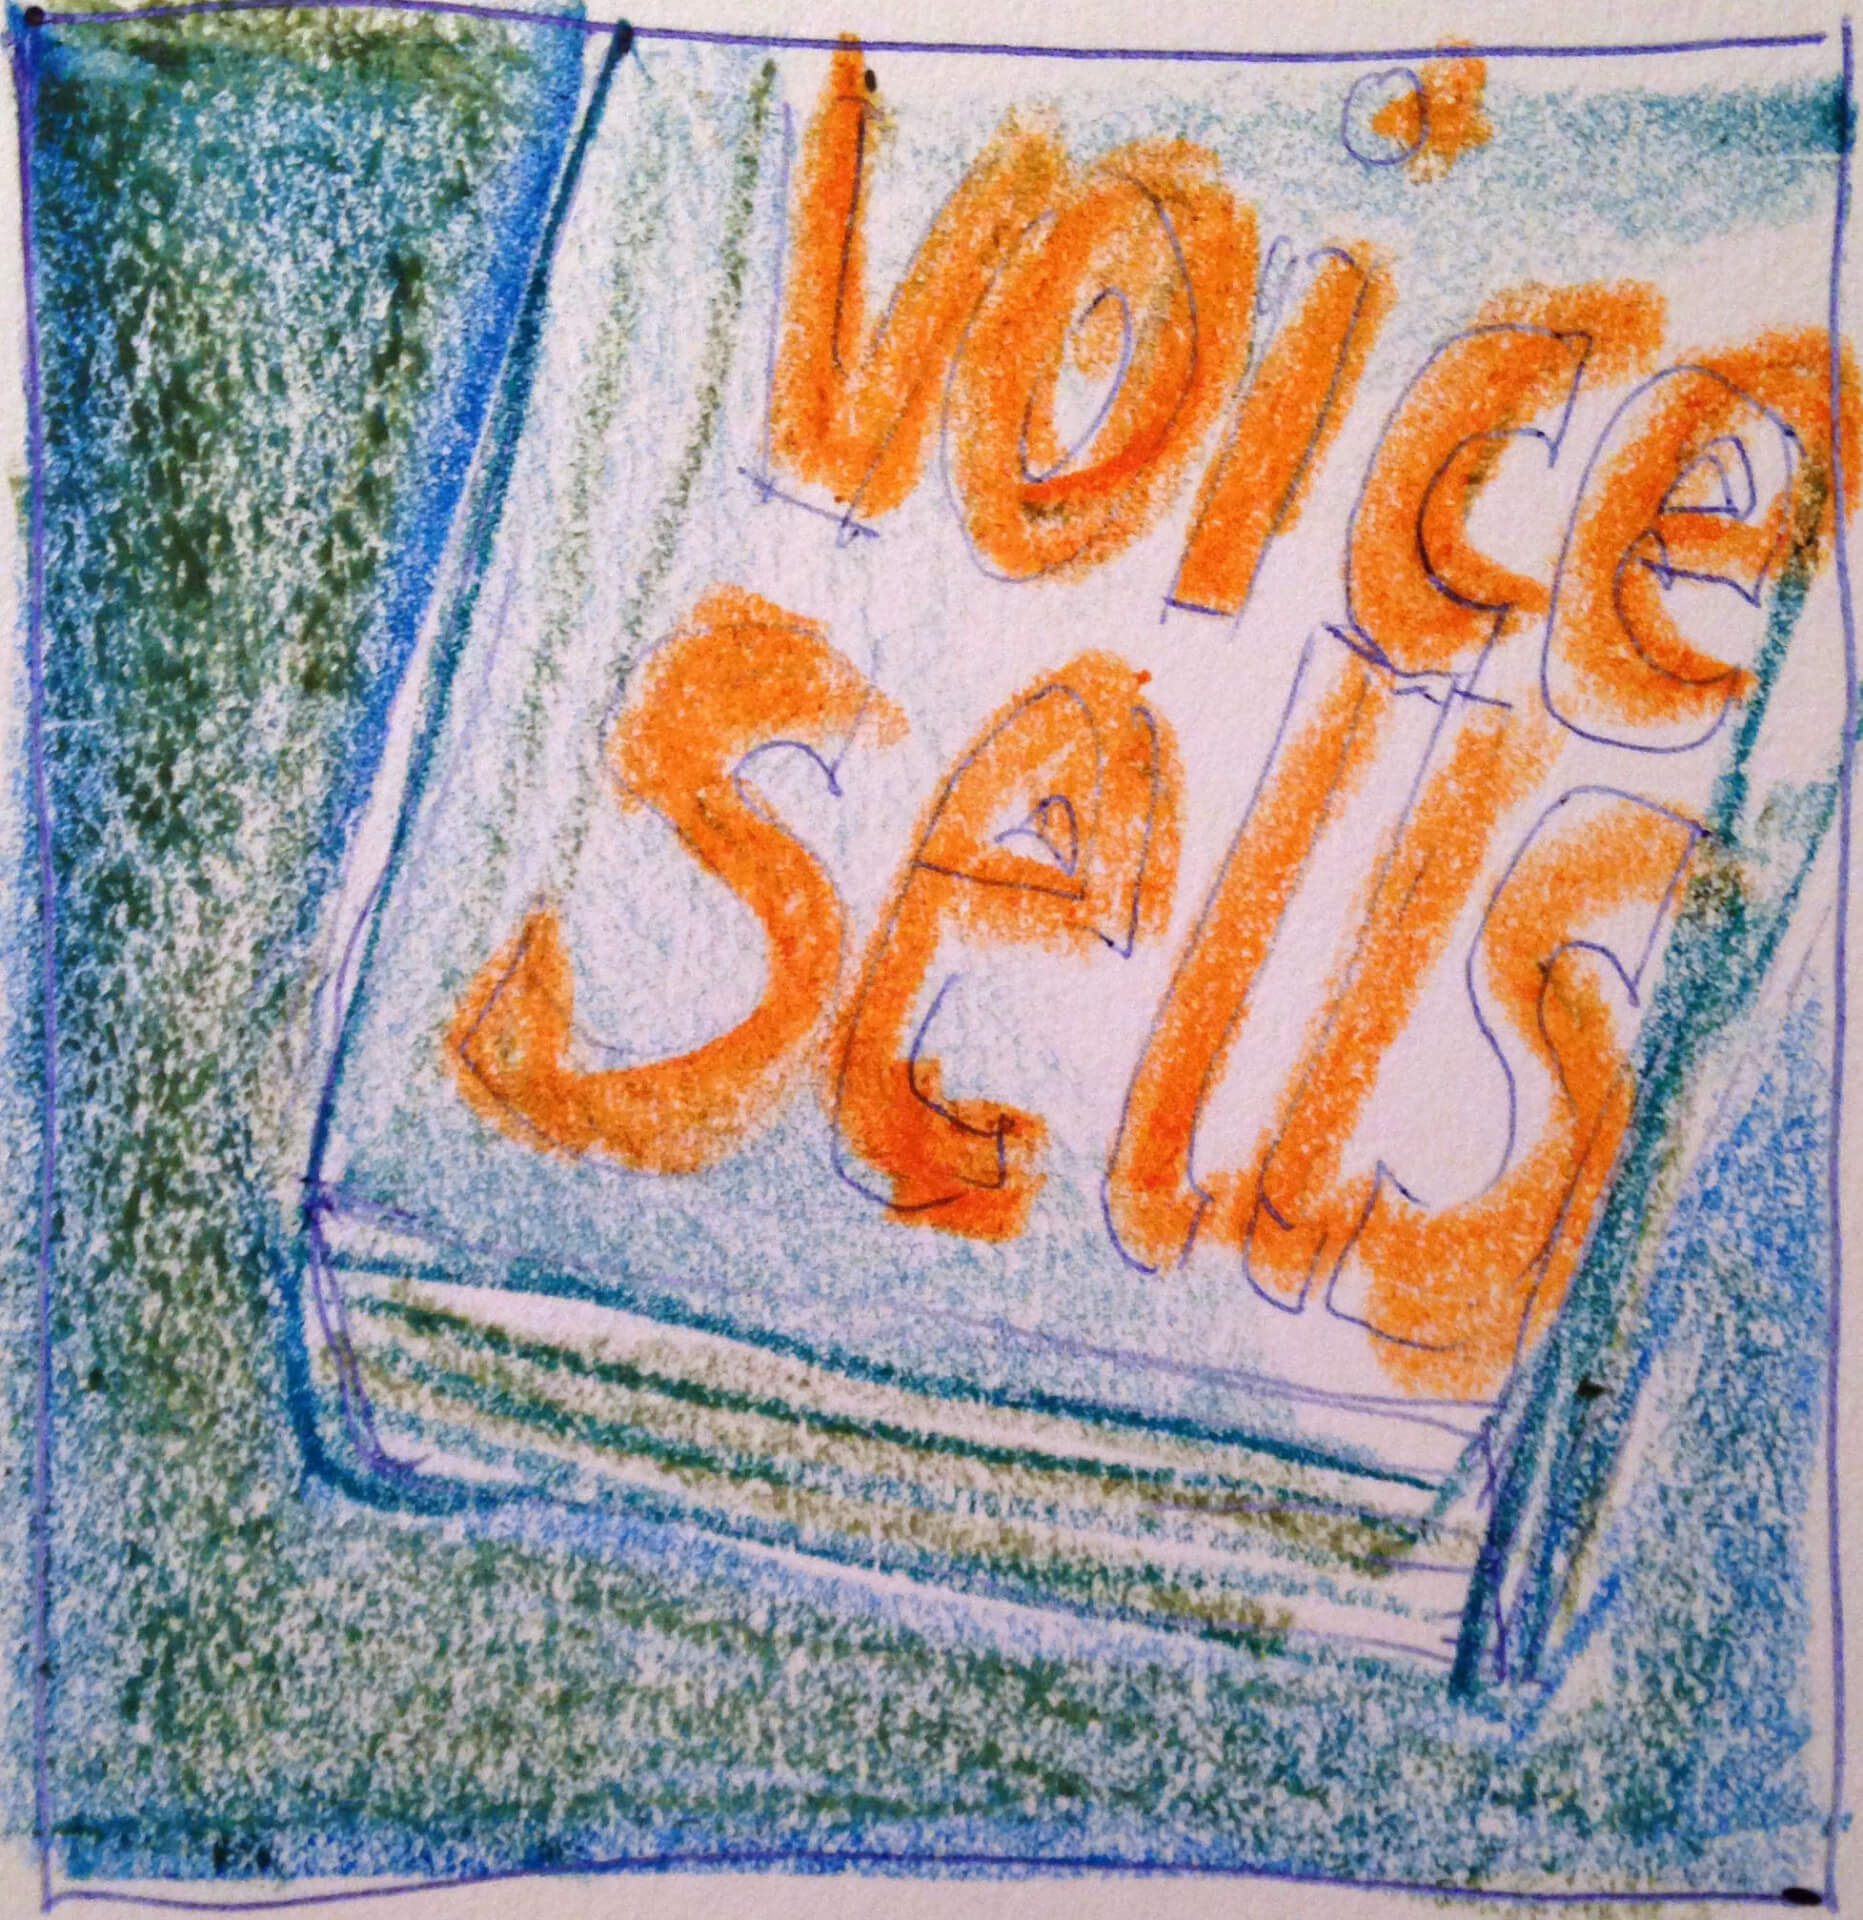 Handgezeichnete Illustration eines Buches mit dem Text „Stimme sells“ auf dem Cover.